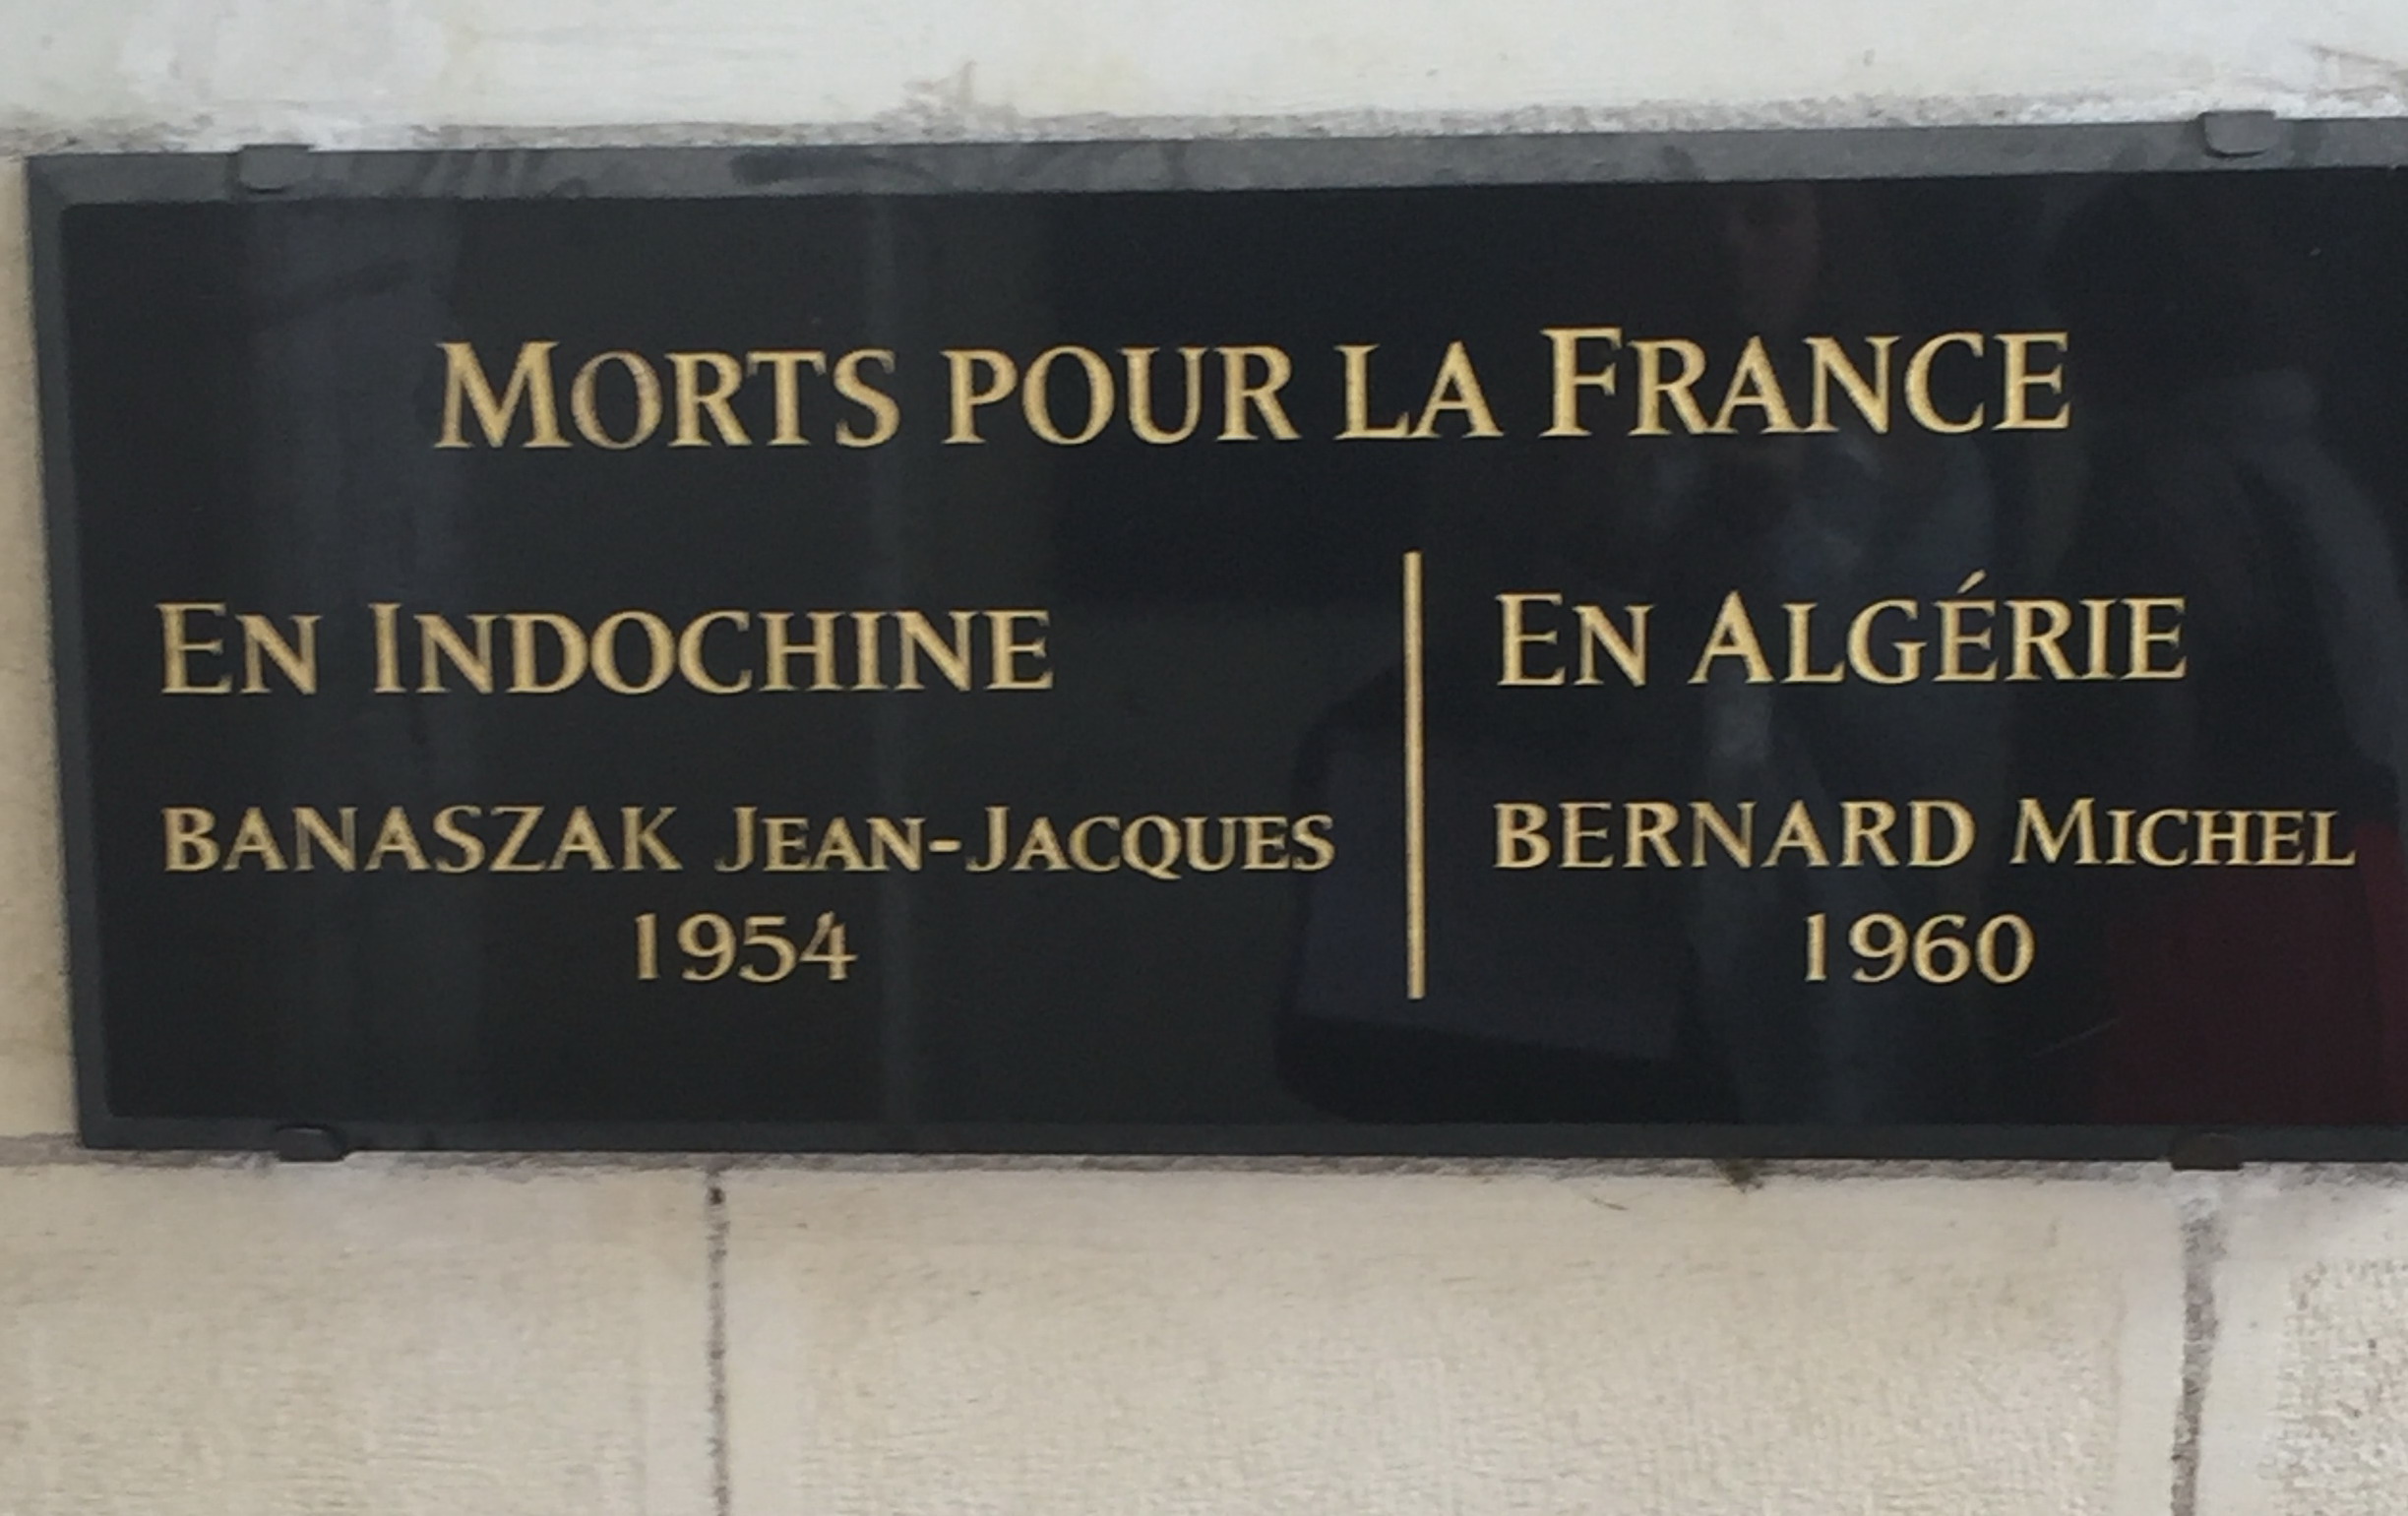 Morts pour la France Ancienne mairie